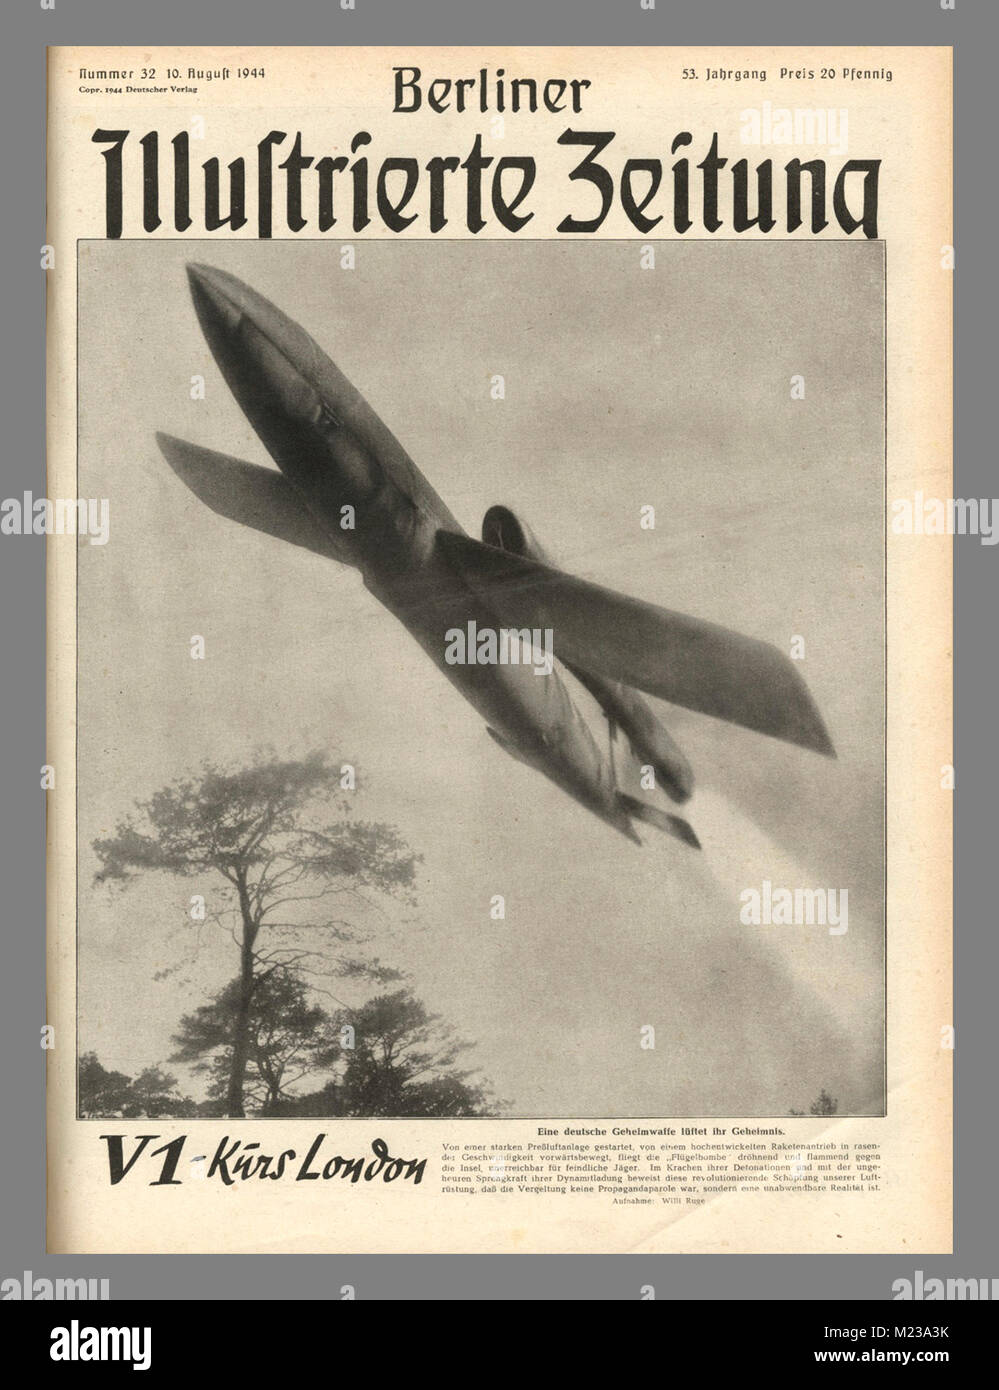 WW2 ...Nazi VI Rocket 'Buzz' Bomb 1944/1945 propagande du journal nazi au peuple allemand la "arme de terreur" V1 bombe à roquette (bombe buzz) lancée à partir d'un lance-roquettes mobile dans le nord de la France dans sa dernière émission le 30 janvier, 1945 Adolf Hitler a promis, malgré une défaite imminente, la « victoire finale » avec V1 et V2 bombes à roquette. La victoire alliée a eu lieu en avril 1945 quand il a commis le suicide... image de l'historique Berliner Ilustrierte Zeitung (journal de propagande illustré Berlin) Banque D'Images